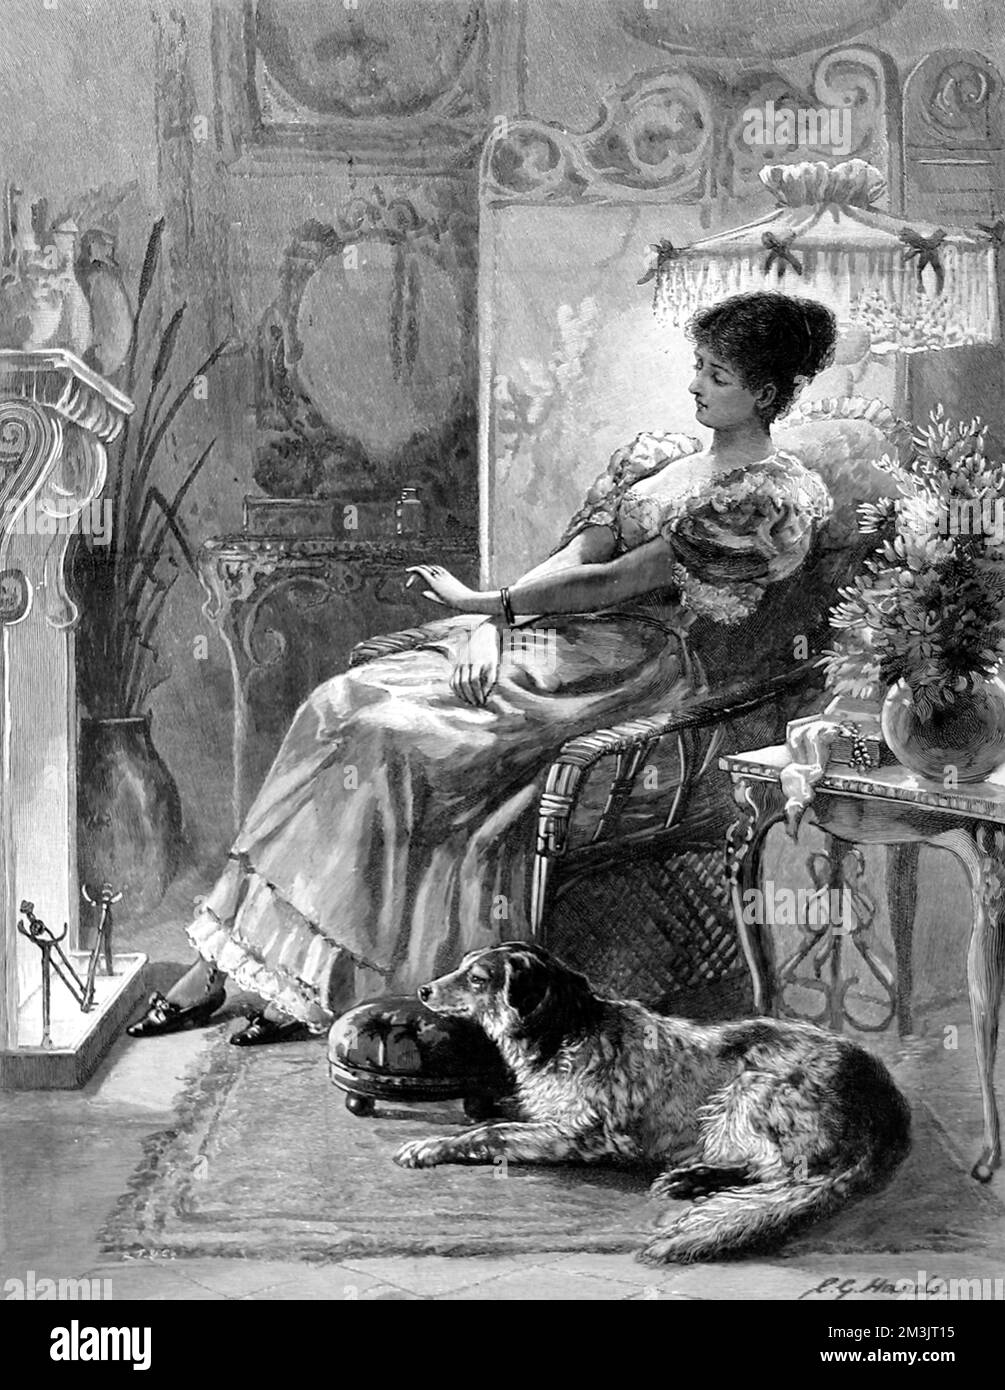 Eine junge Frau saß auf einem Stuhl am Feuer und bewunderte den Verlobungsring an ihrer linken Hand. Das Zimmer, in dem sie sitzt, hat ein typisch kunstvoll verziertes, spätviktorianisches Interieur, während ein Hund neben ihrem Fußhocker sitzt. 1895 Stockfoto